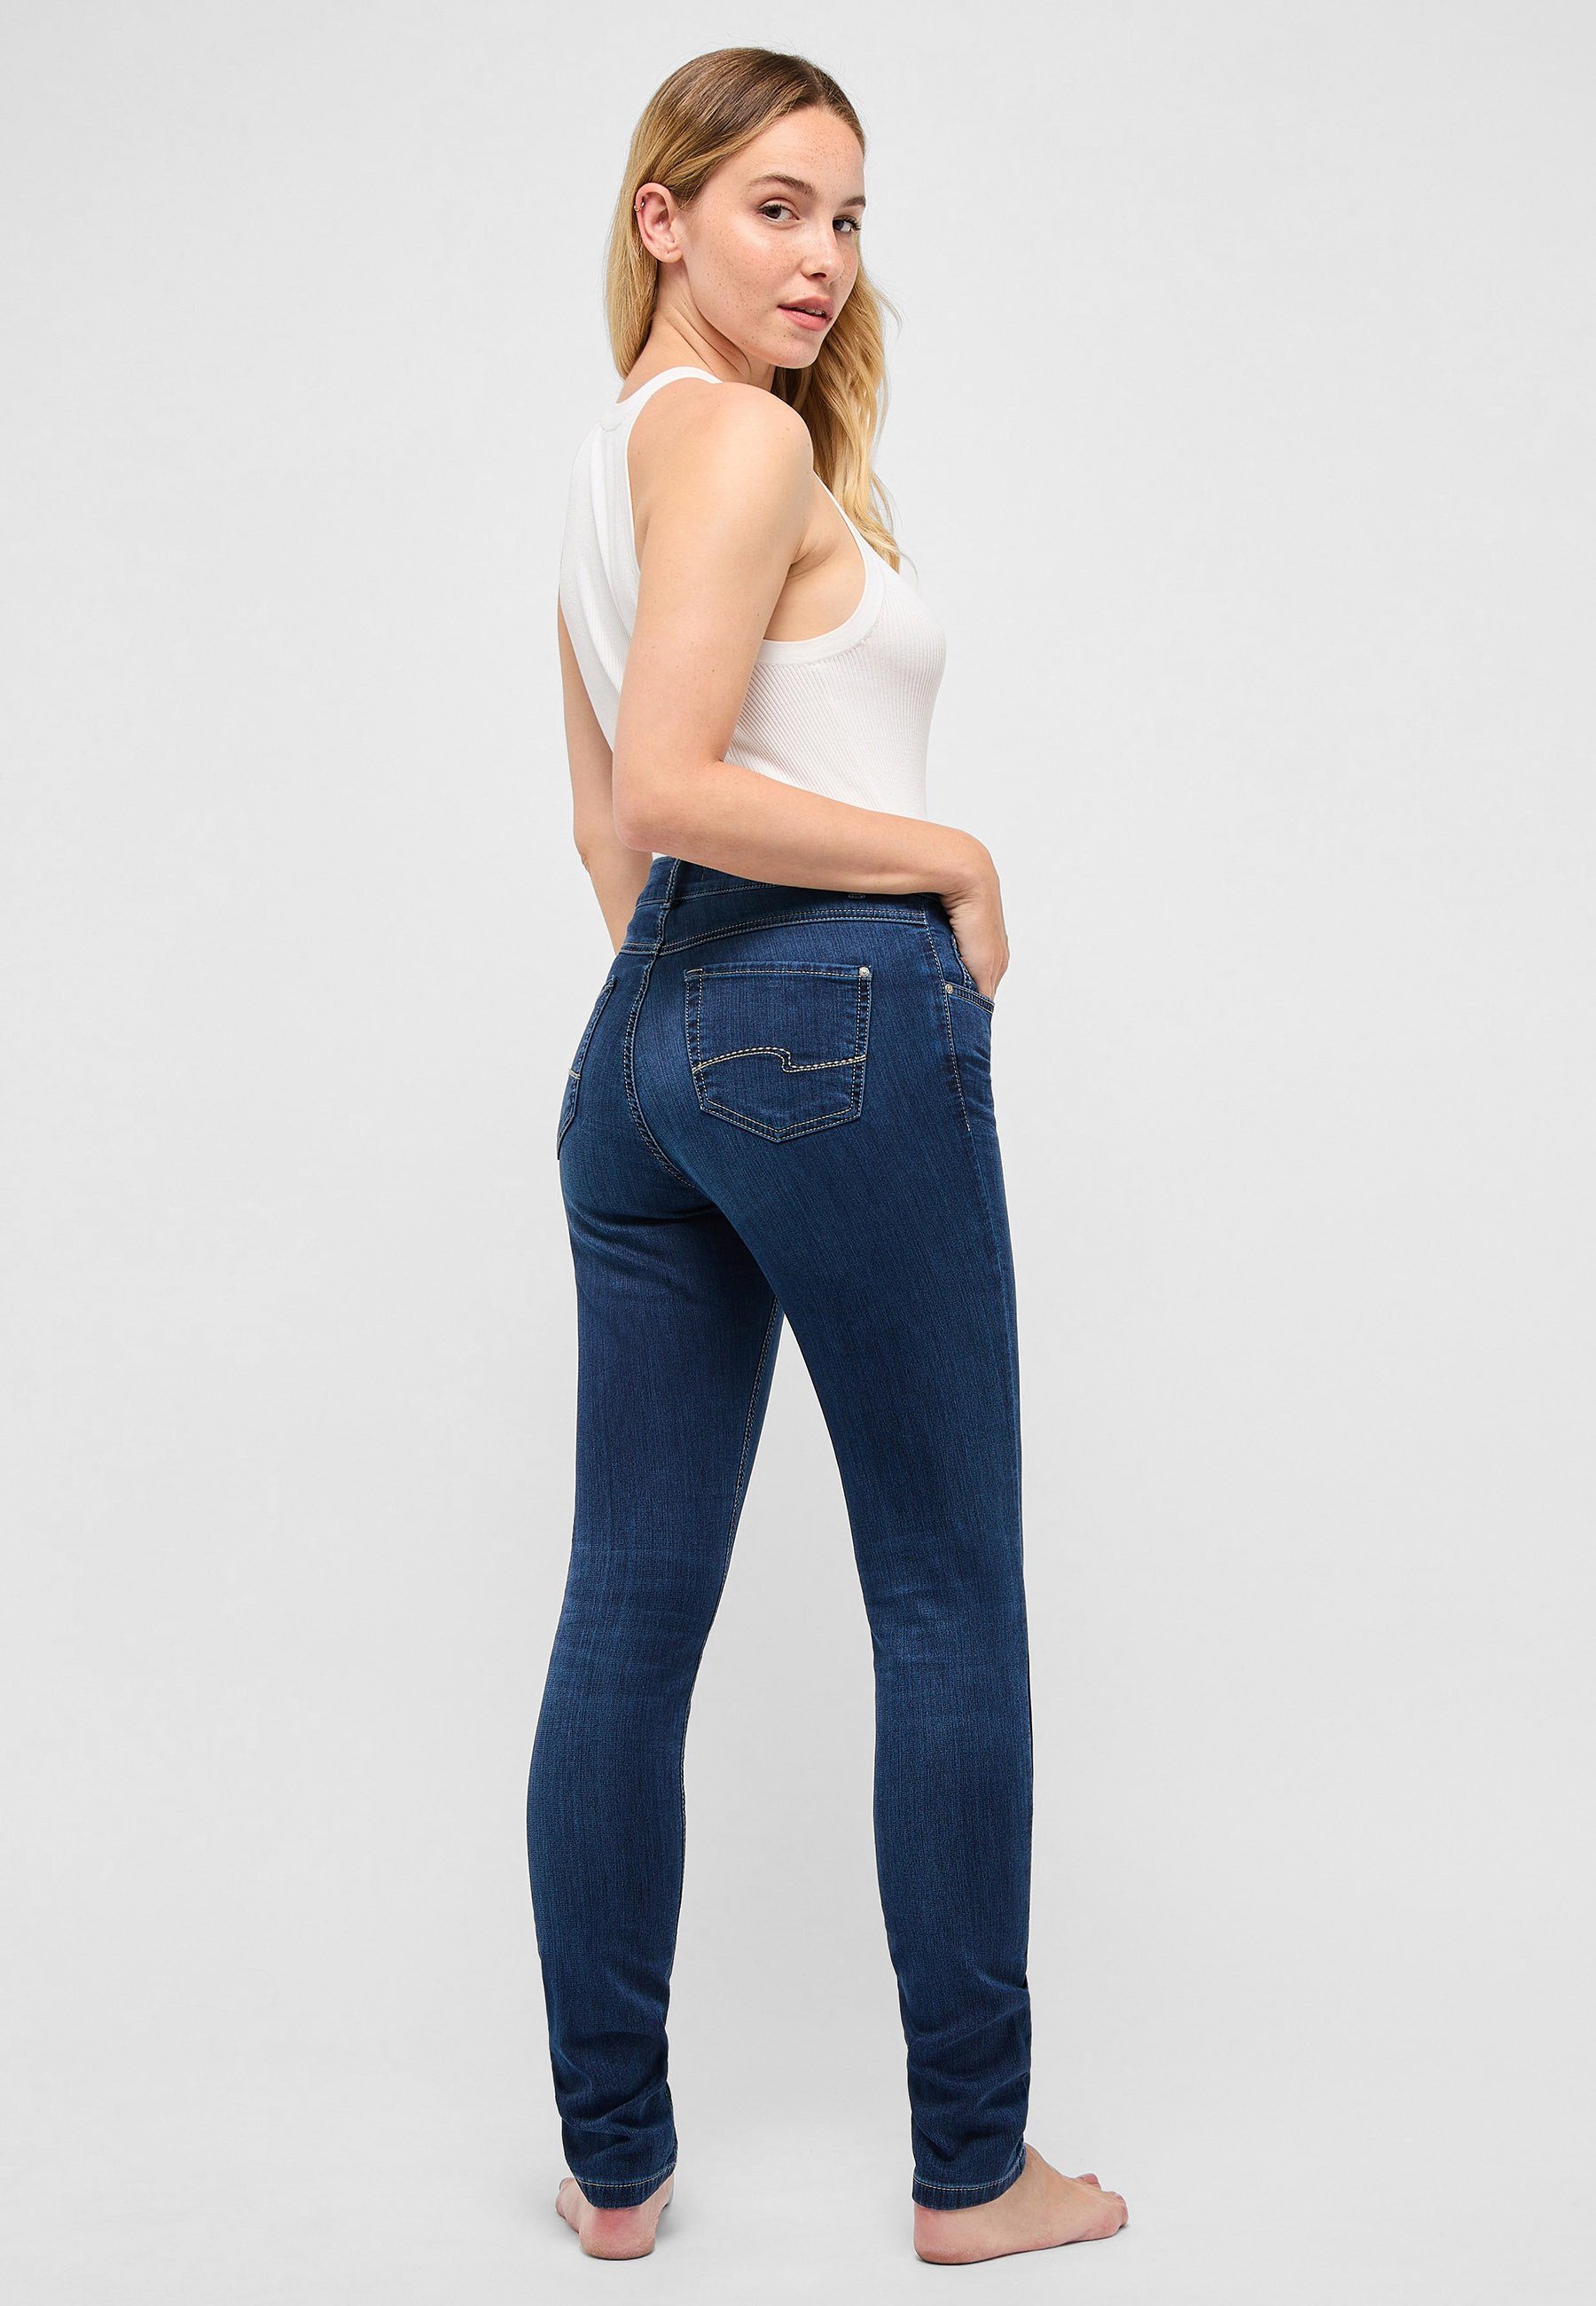 ANGELS Label-Applikationen Skinny-fit-Jeans mit dunkelblau Slim-fit-Jeans Skinny mit Stoff unifarbenem